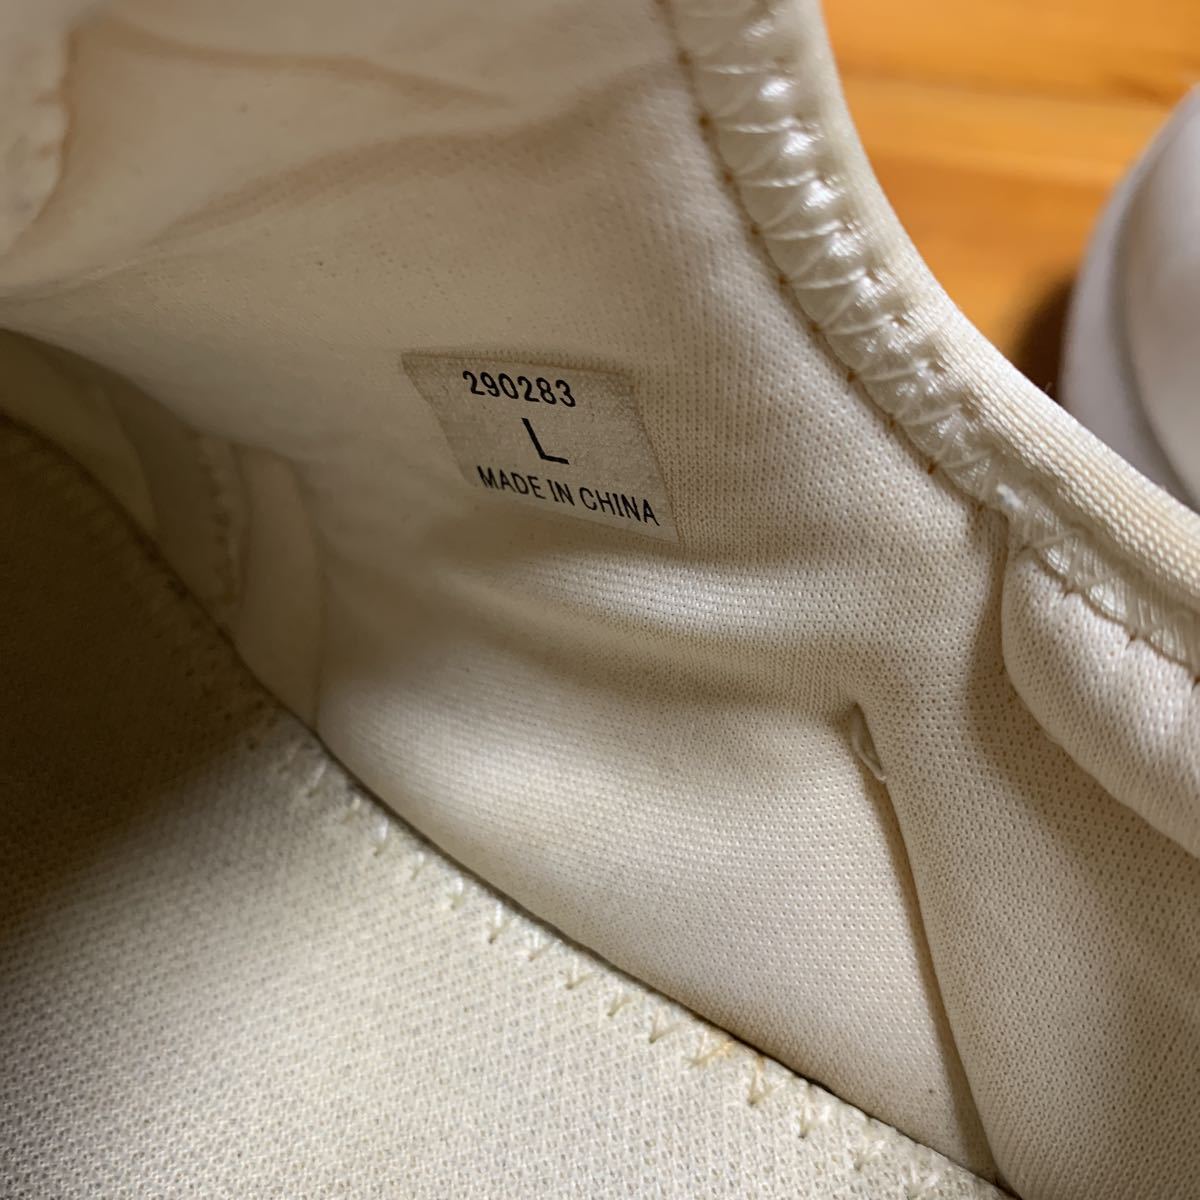 レディース シューズ 靴 スニーカー ホワイト 片足171g 軽い サイズ L 約24cm 中古 半年使用品 送料無料_画像8